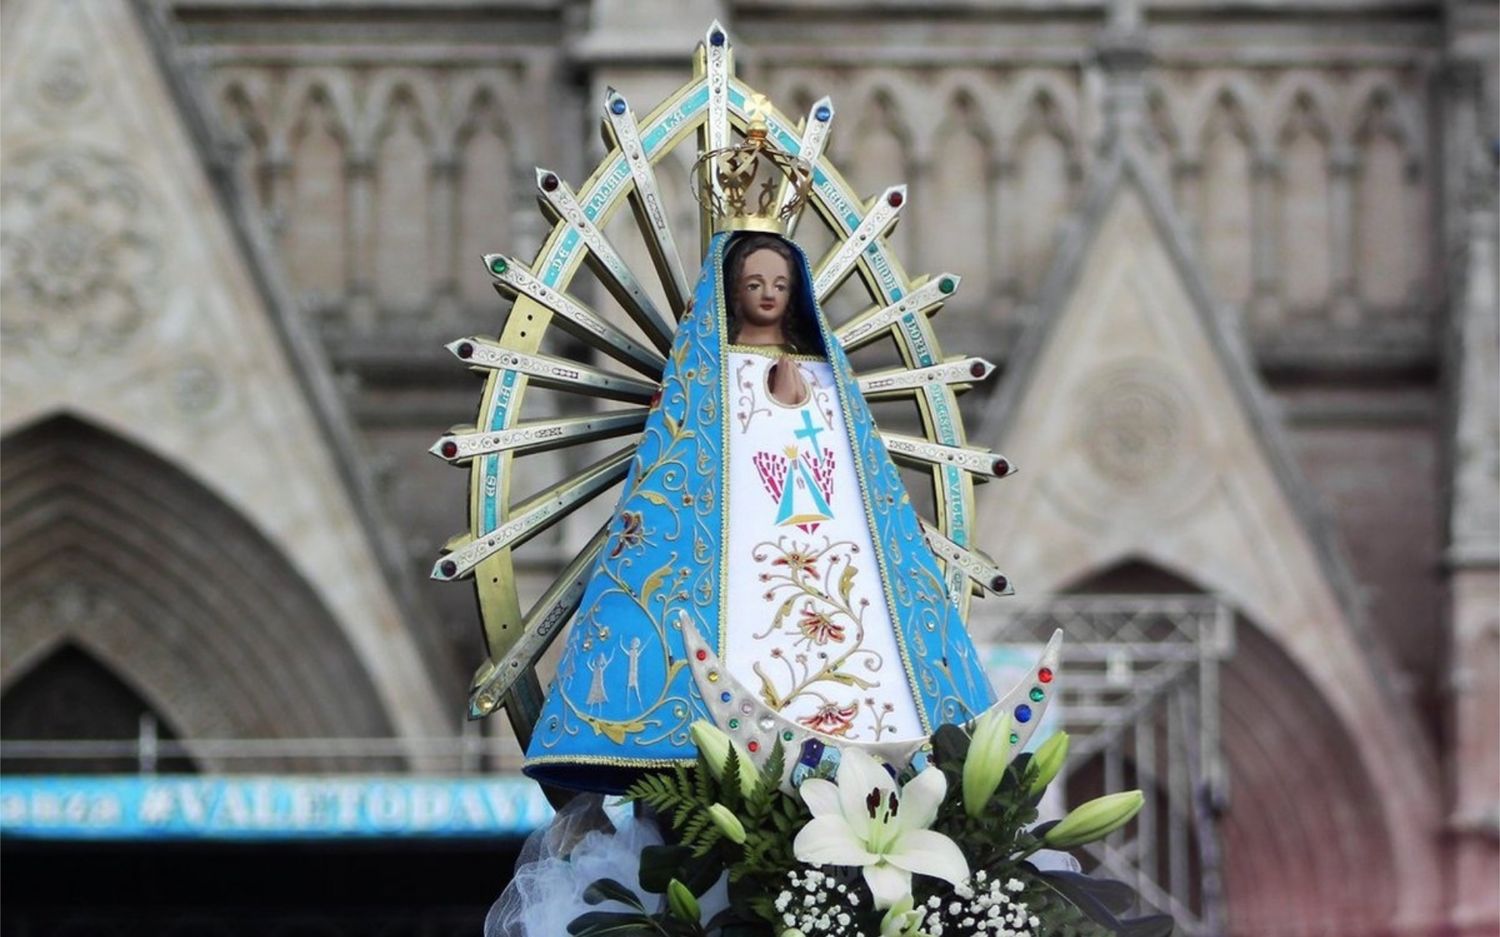 Procesión y festejos a 132 años de la Coronación de la Virgen de Nuestra Señora de Luján